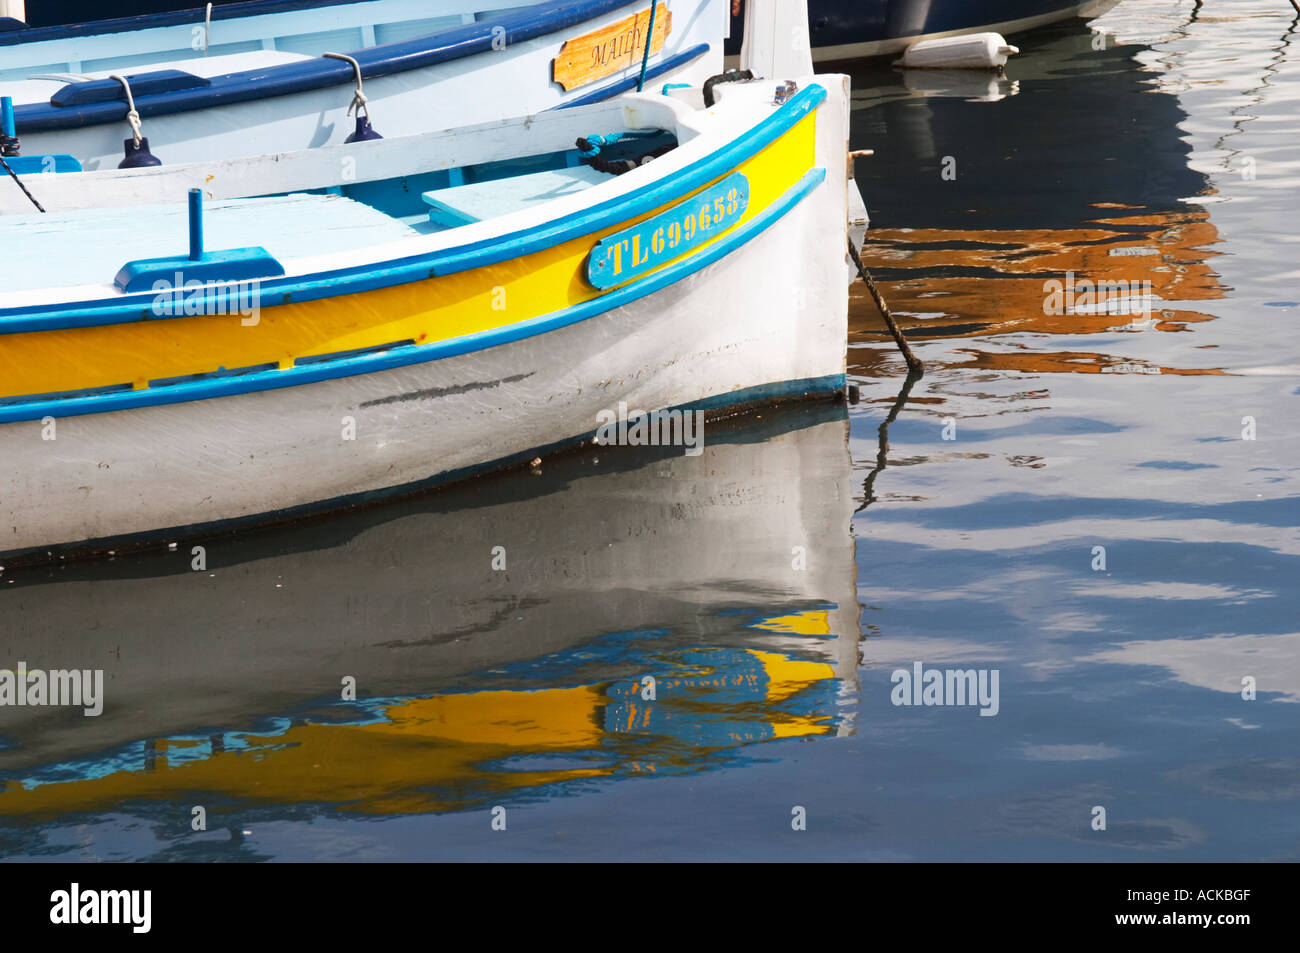 Les bateaux de pêche typiques provençales peints dans des couleurs blanc, bleu, vert rouge jaune, amarré au keyside, réflexions Sanary Var Cote d'Azur France Banque D'Images